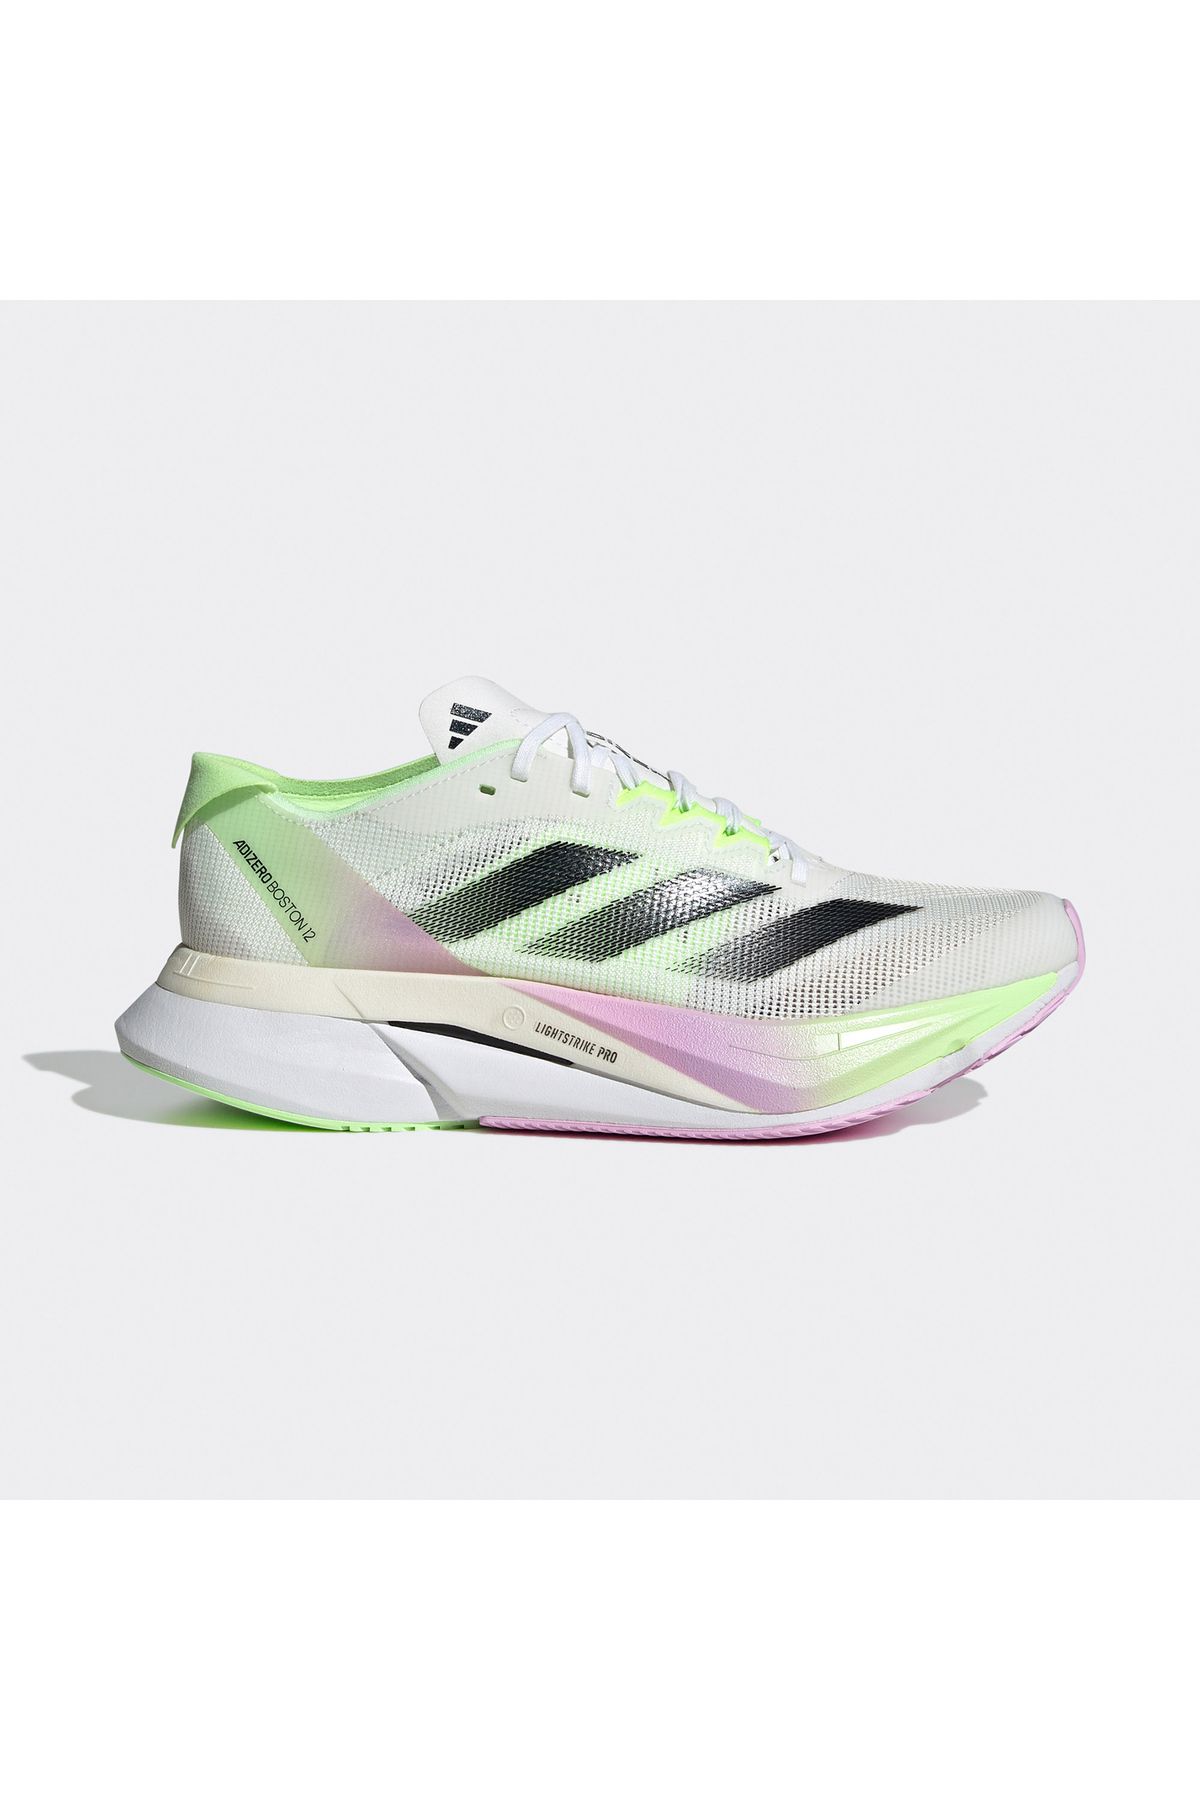 adidas Adizero Boston 12 Kadın Yeşil Koşu Ayakkabısı